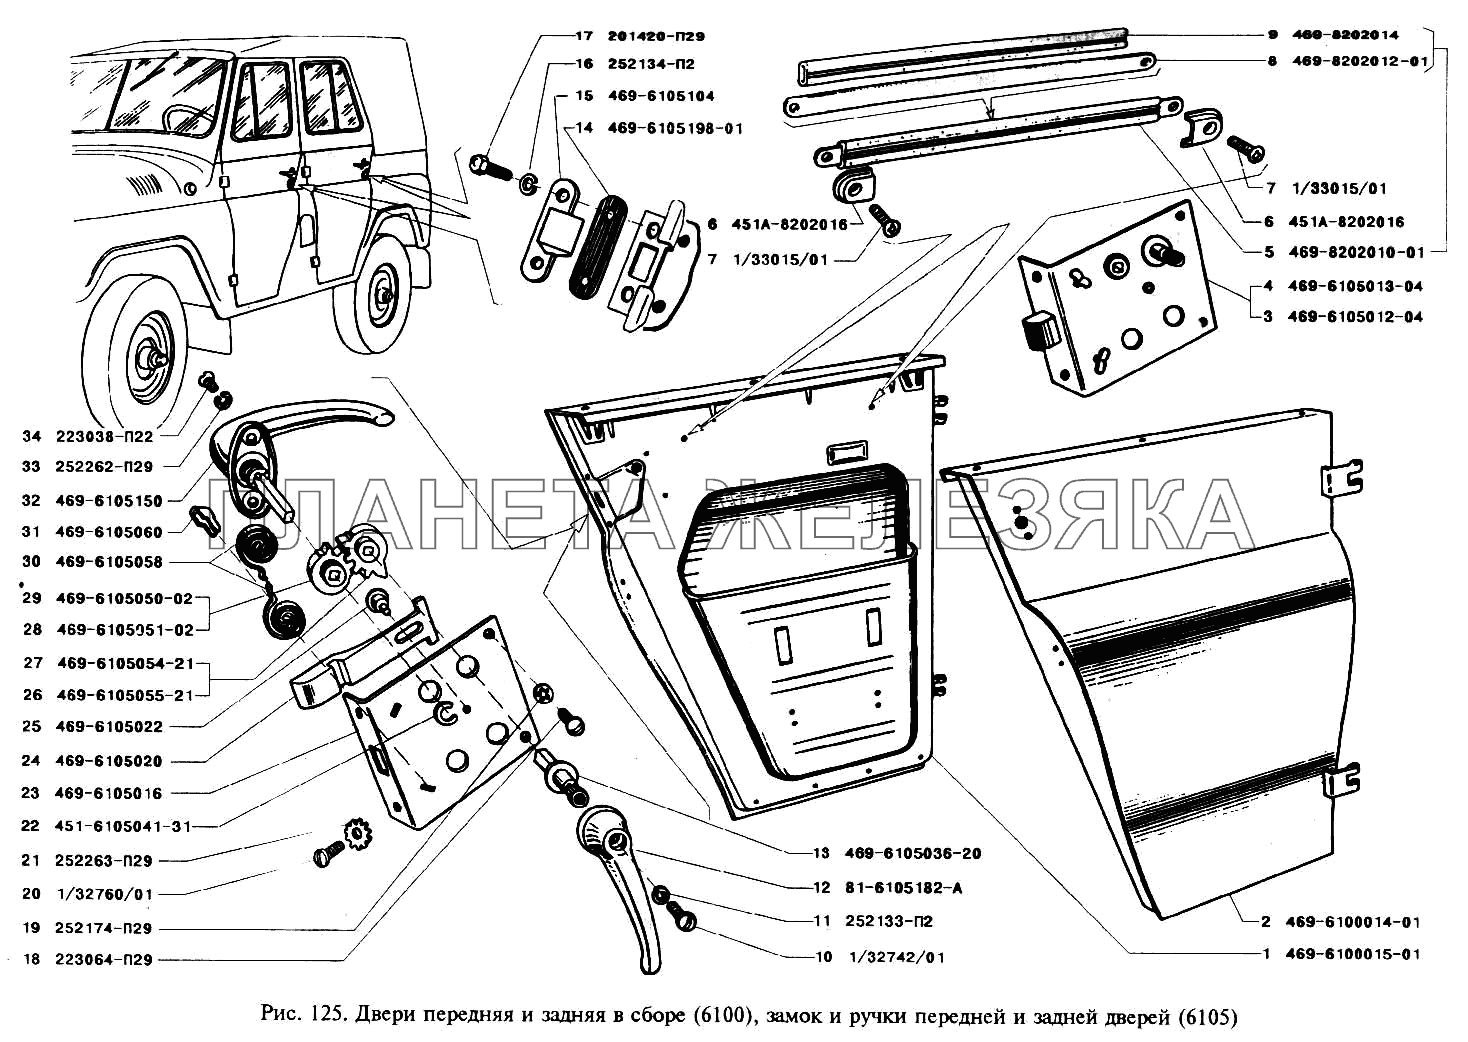 Двери передняя и задняя в сборе, замок и ручки передней и задней дверей УАЗ-3151